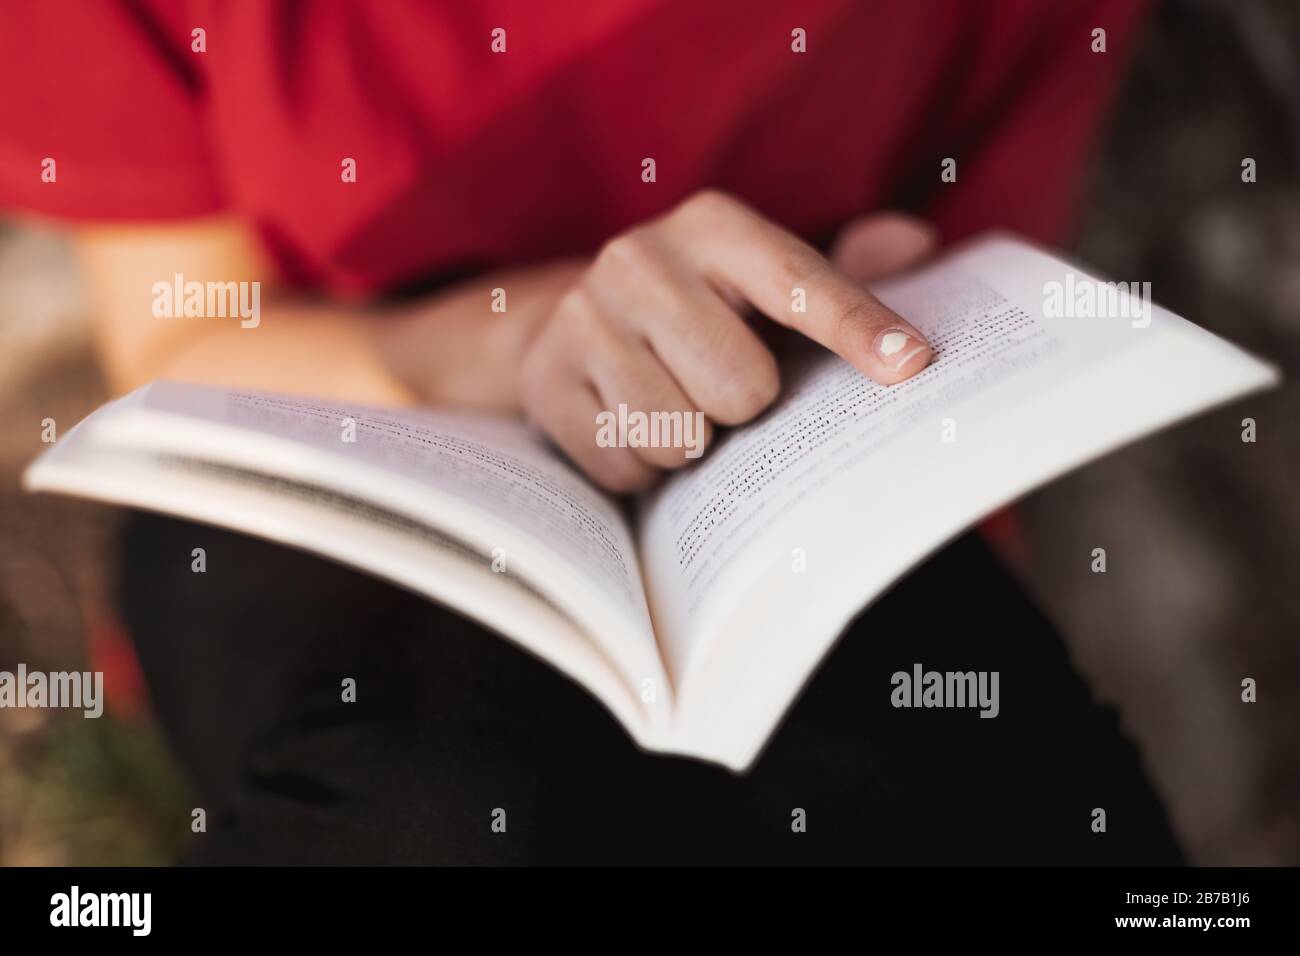 Gros plan d'un livre ouvert juste au milieu par une jeune femme qui pointe son doigt dans un mot de la page. Faible profondeur de champ. Banque D'Images